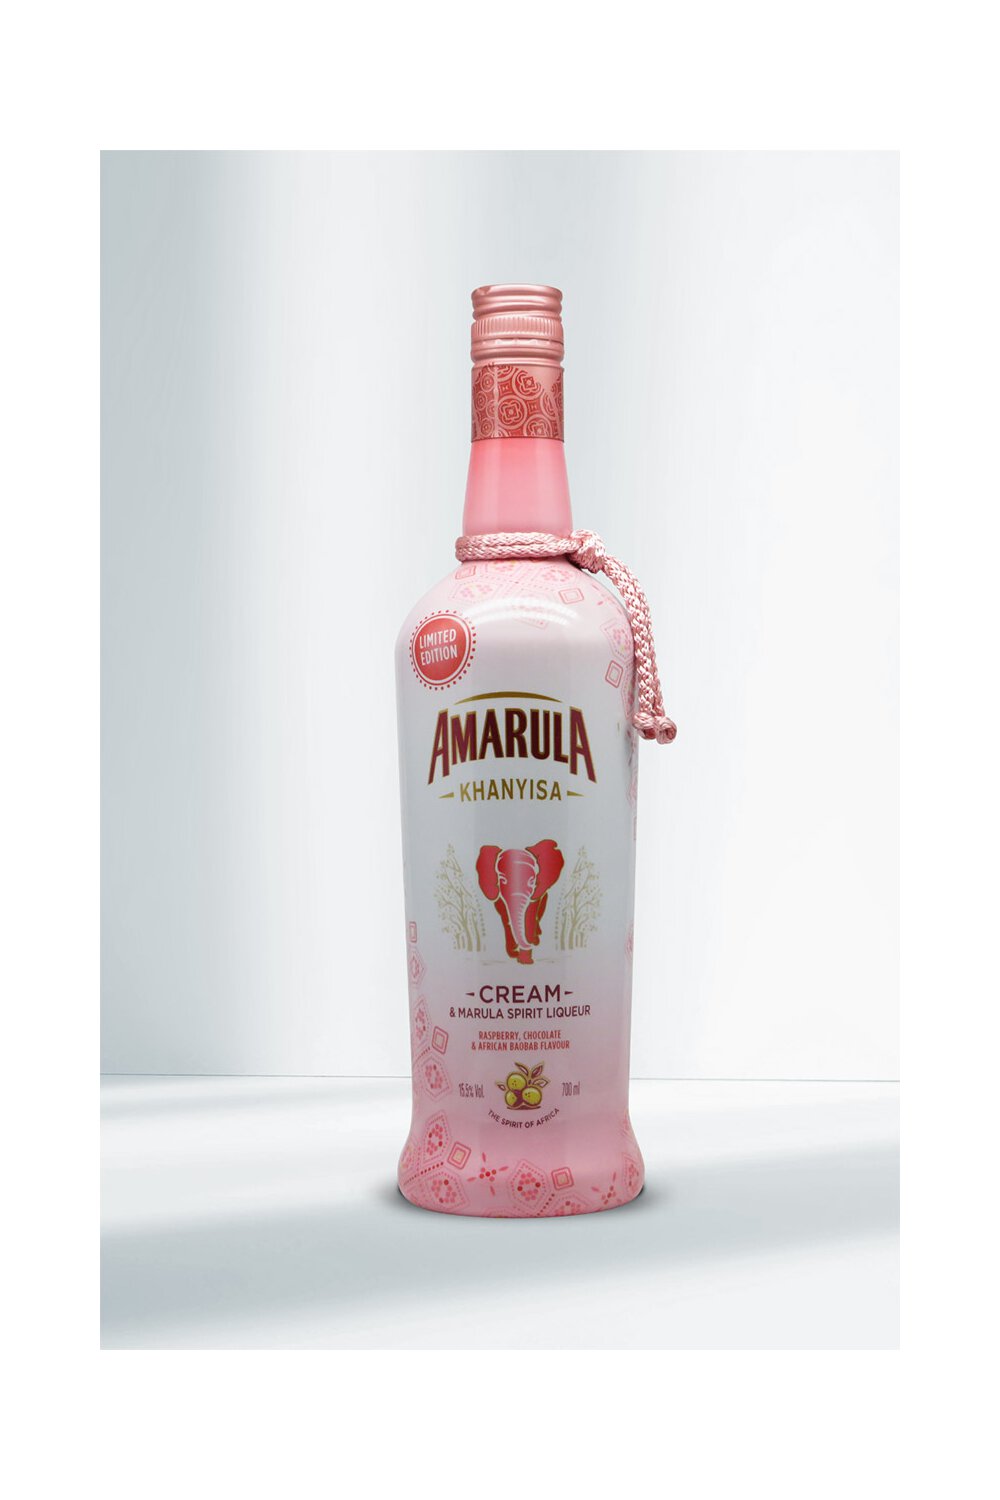 Amarula Raspberry Chocolate Limited 0, Baobab 15,5% & African Edition